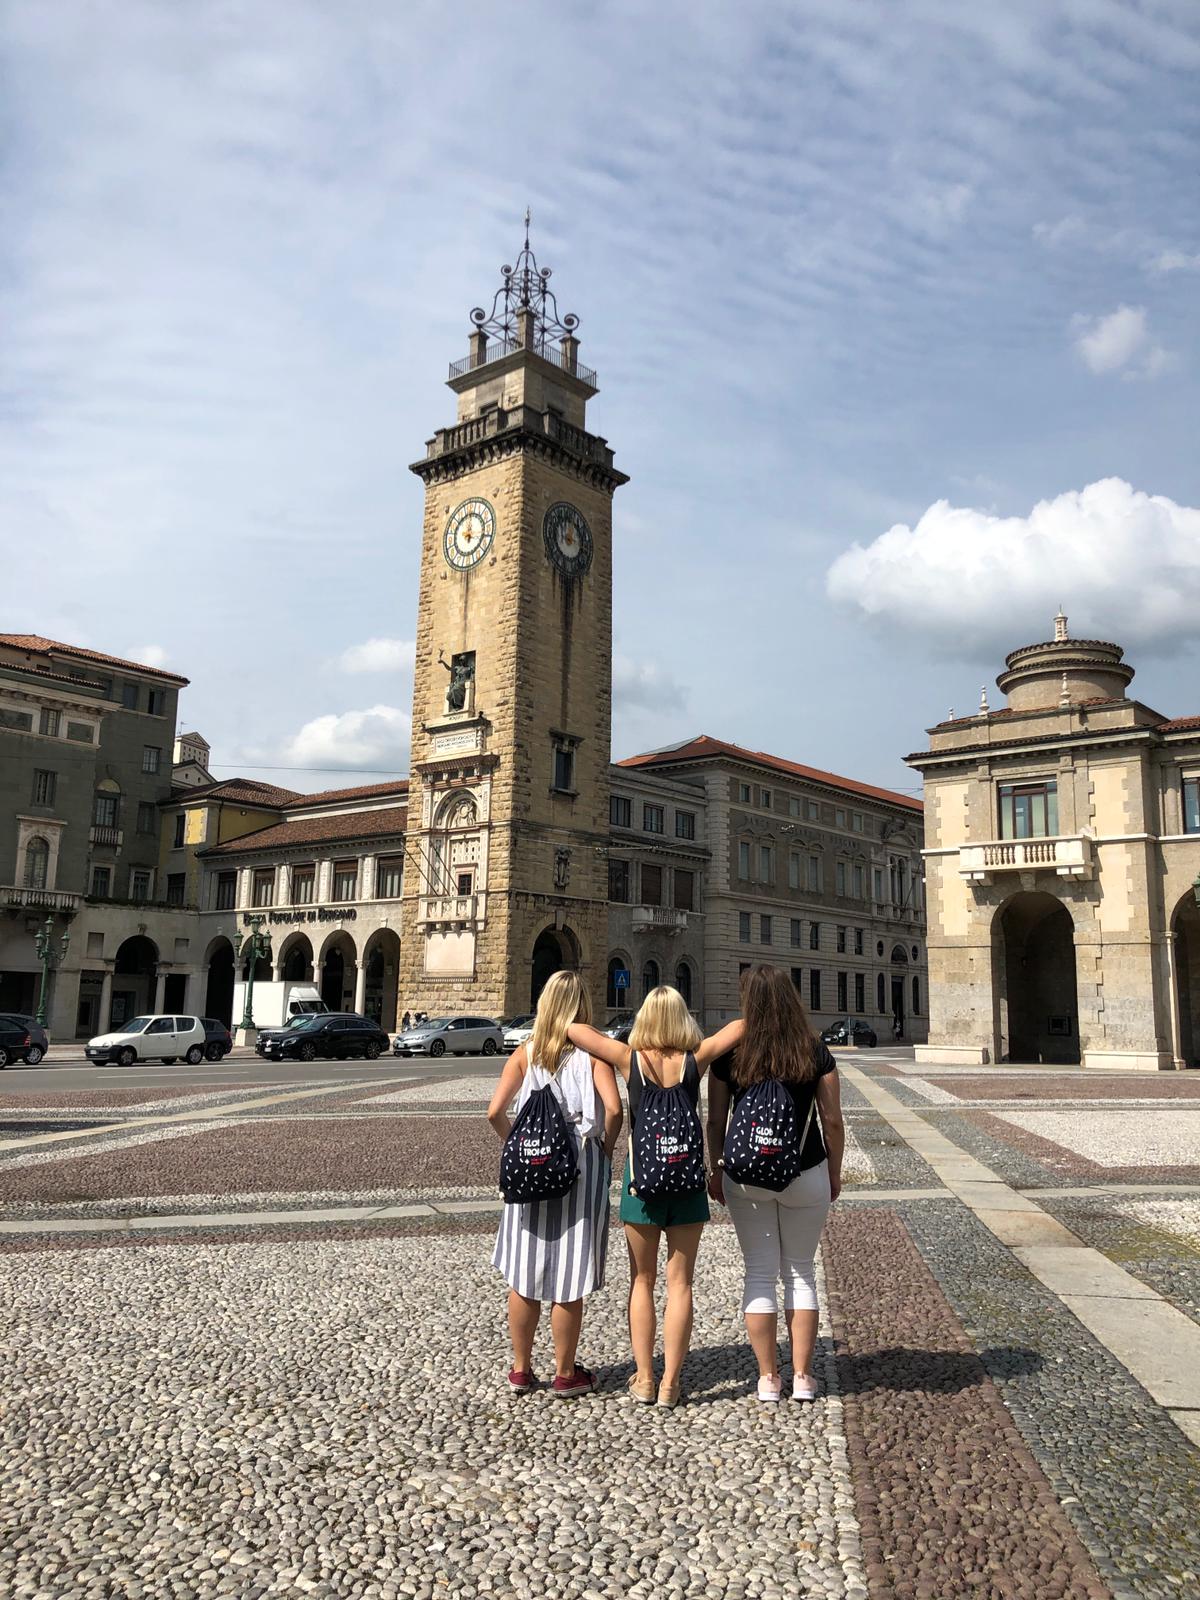 Trzy dziewczyny stojące na włoskim placu pod Wieżą Poległych - Torre dei Caduti - w mieście Bergamo